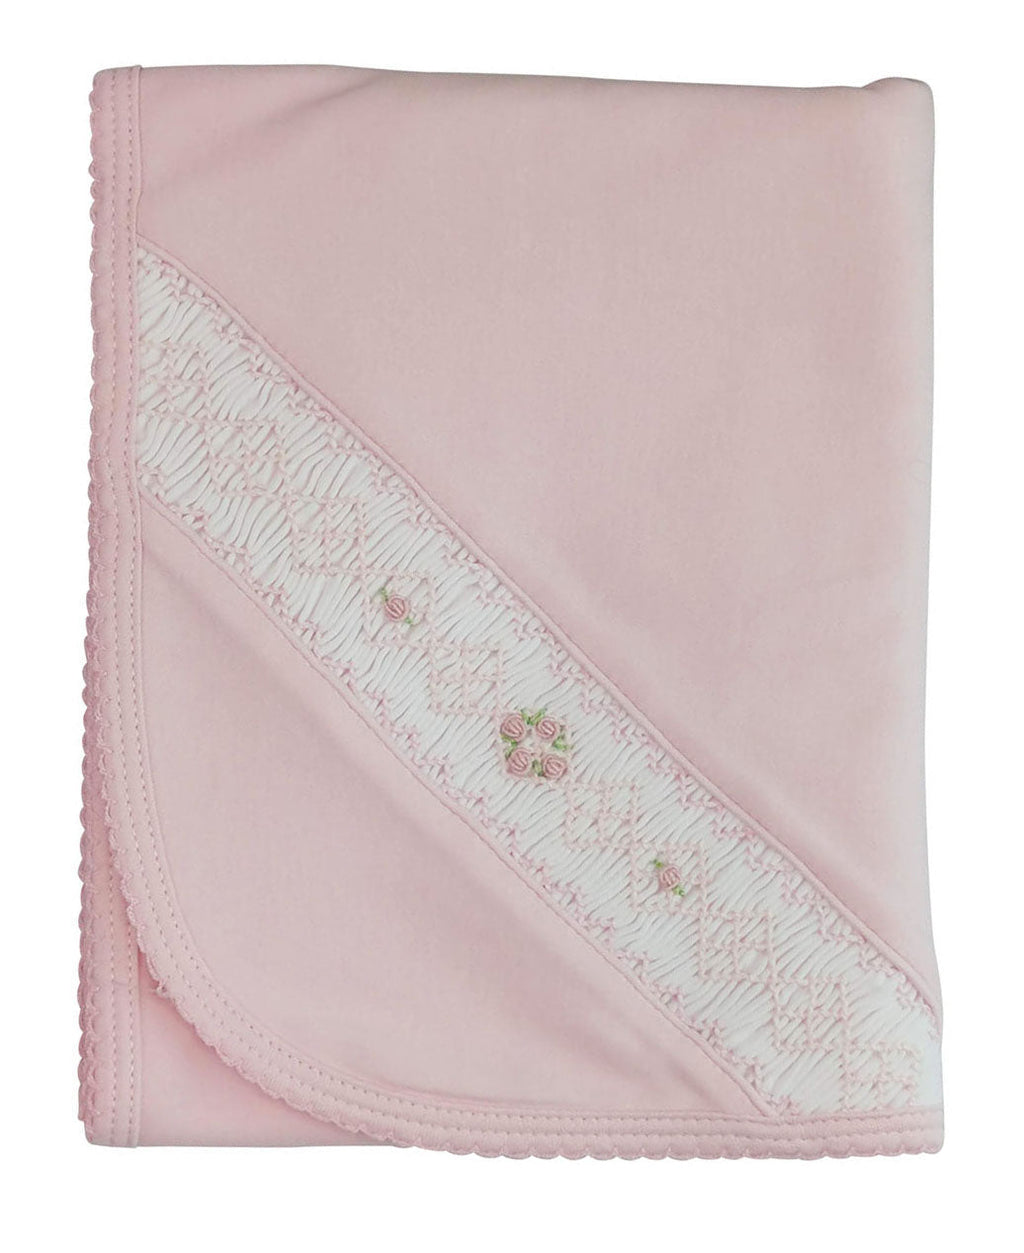 Baby Girl's Pink Smocked Flowers Blanket - Little Threads Inc. Children's Clothing